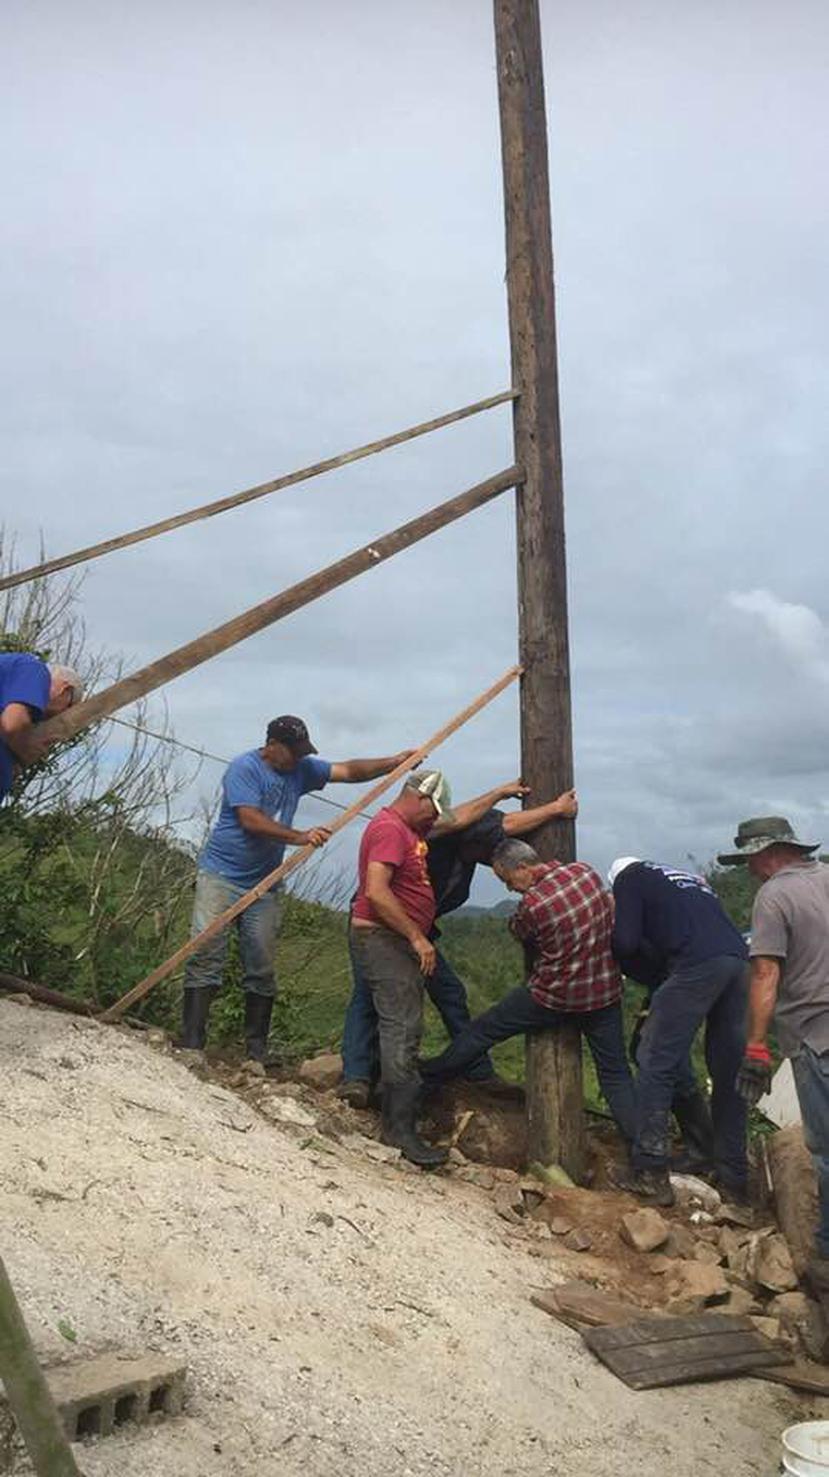 Usaron desde tractores de agricultores hasta sus propias manos para empujar e instalar los postes que el huracán María destruyó. (Suministrada)